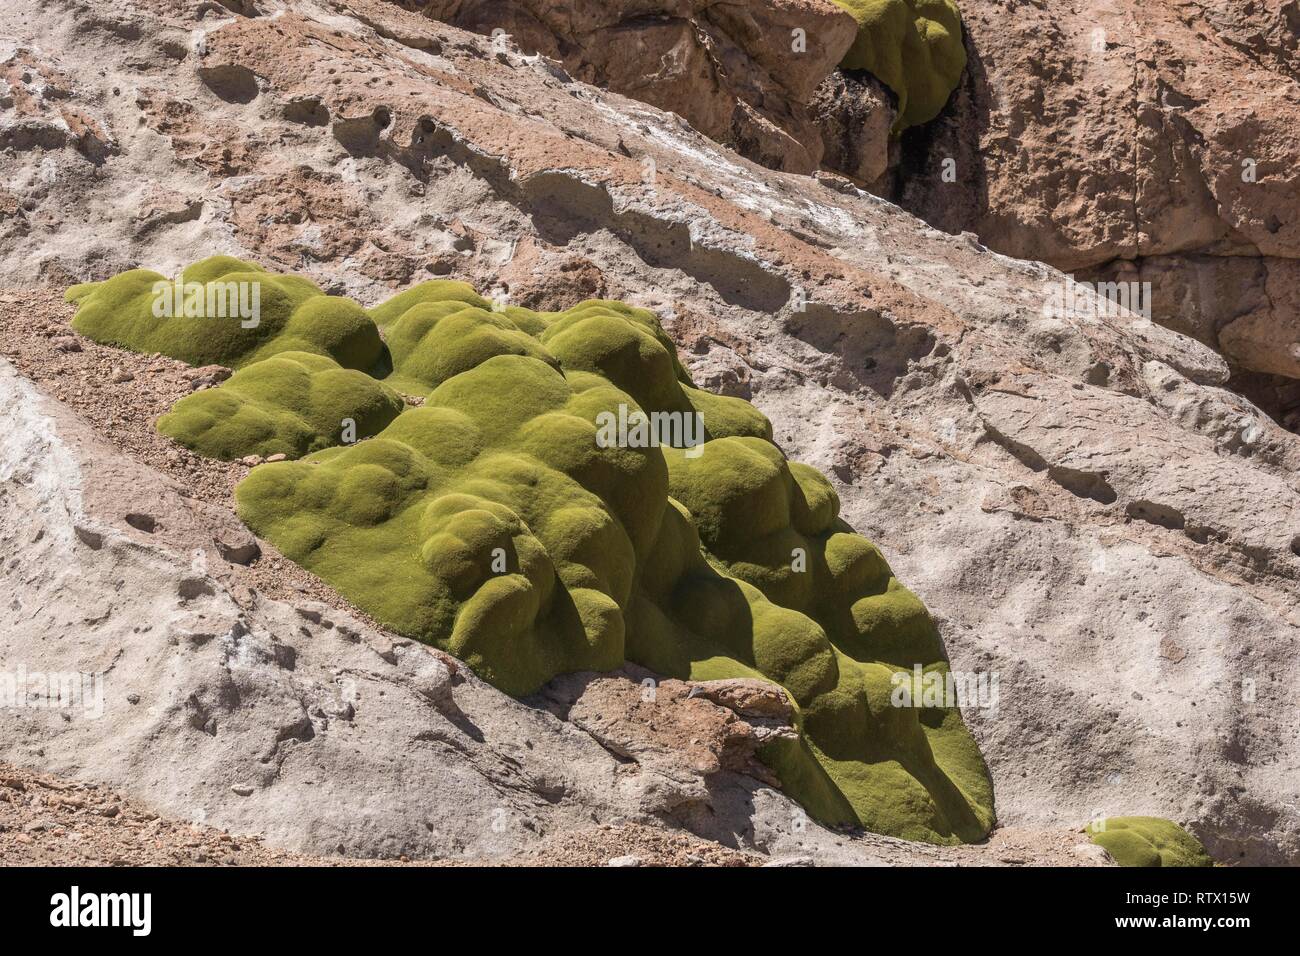 Yareta (Azorella compacta) on rocks, Región de Antofagasta, Chile Stock Photo